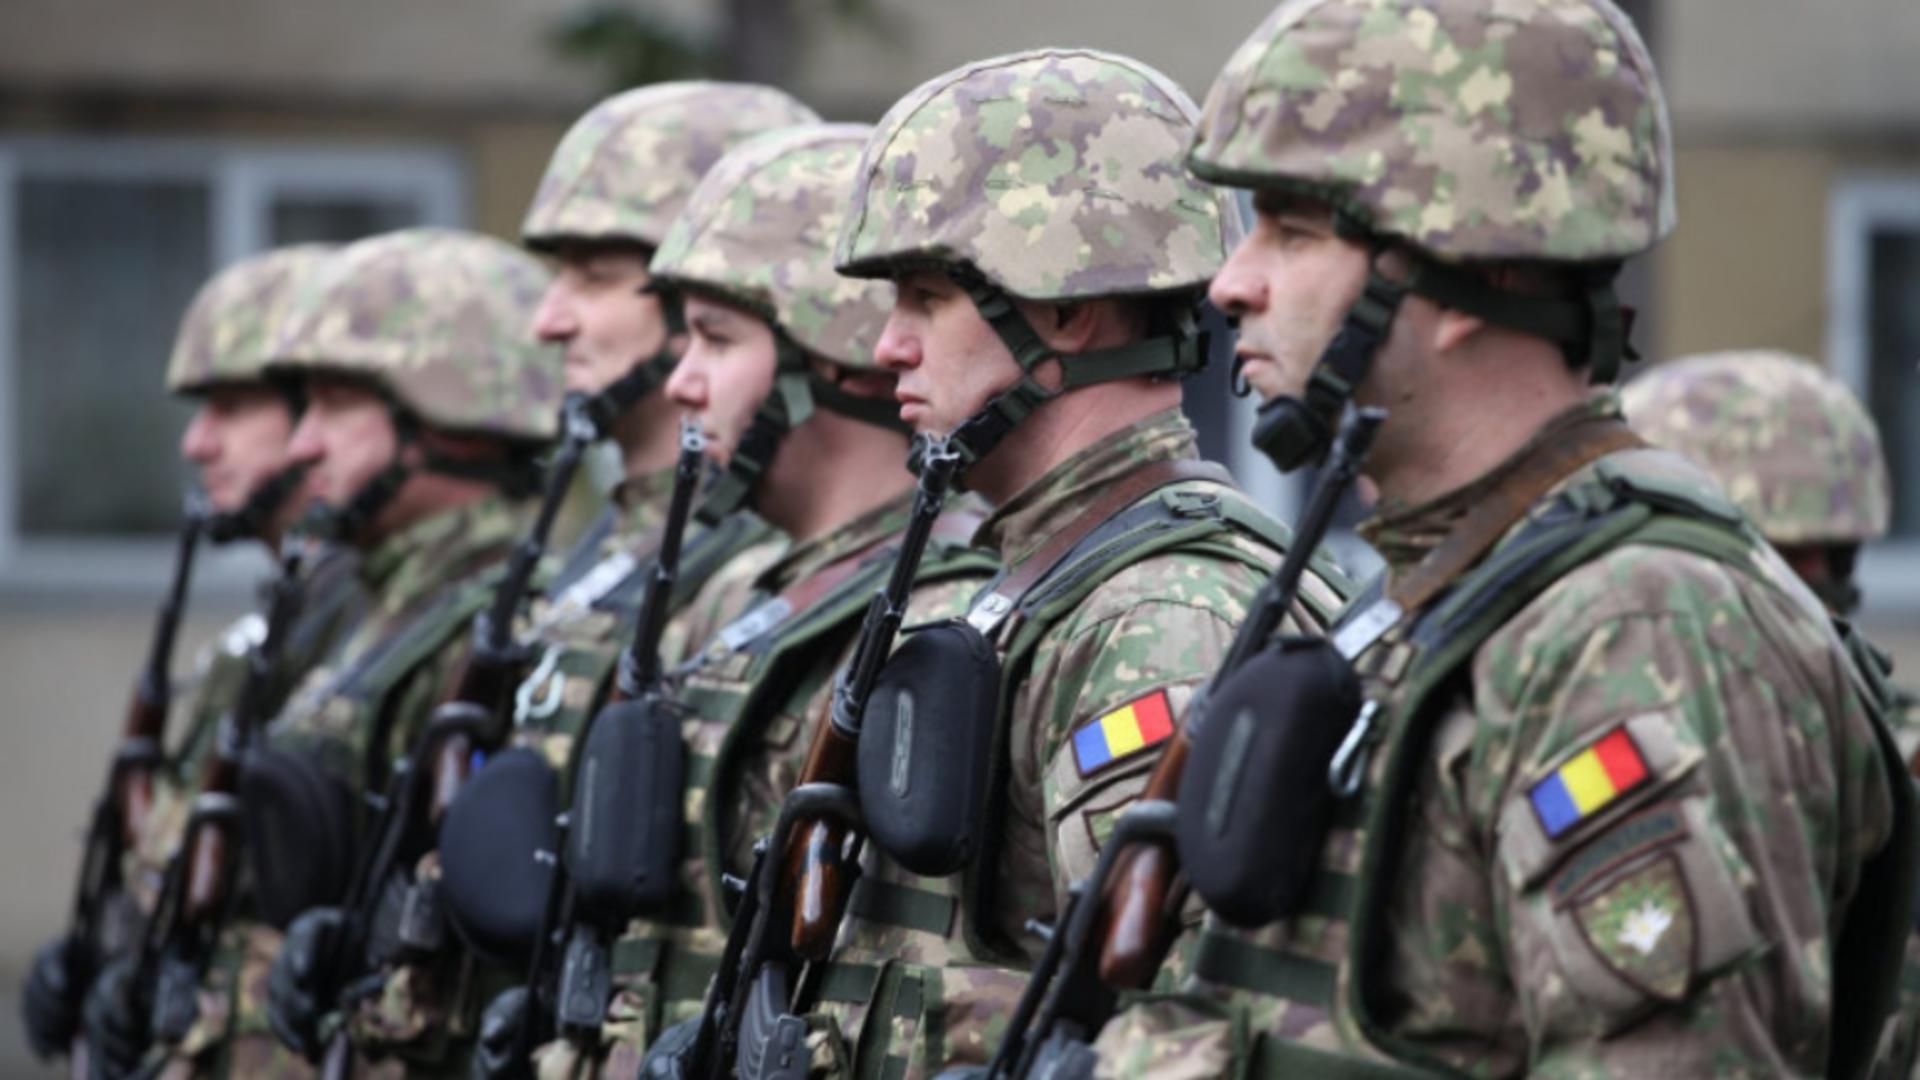 România are deficit de recruți și ar putea reintroduce armata obligatorie. Foto/Profimedia